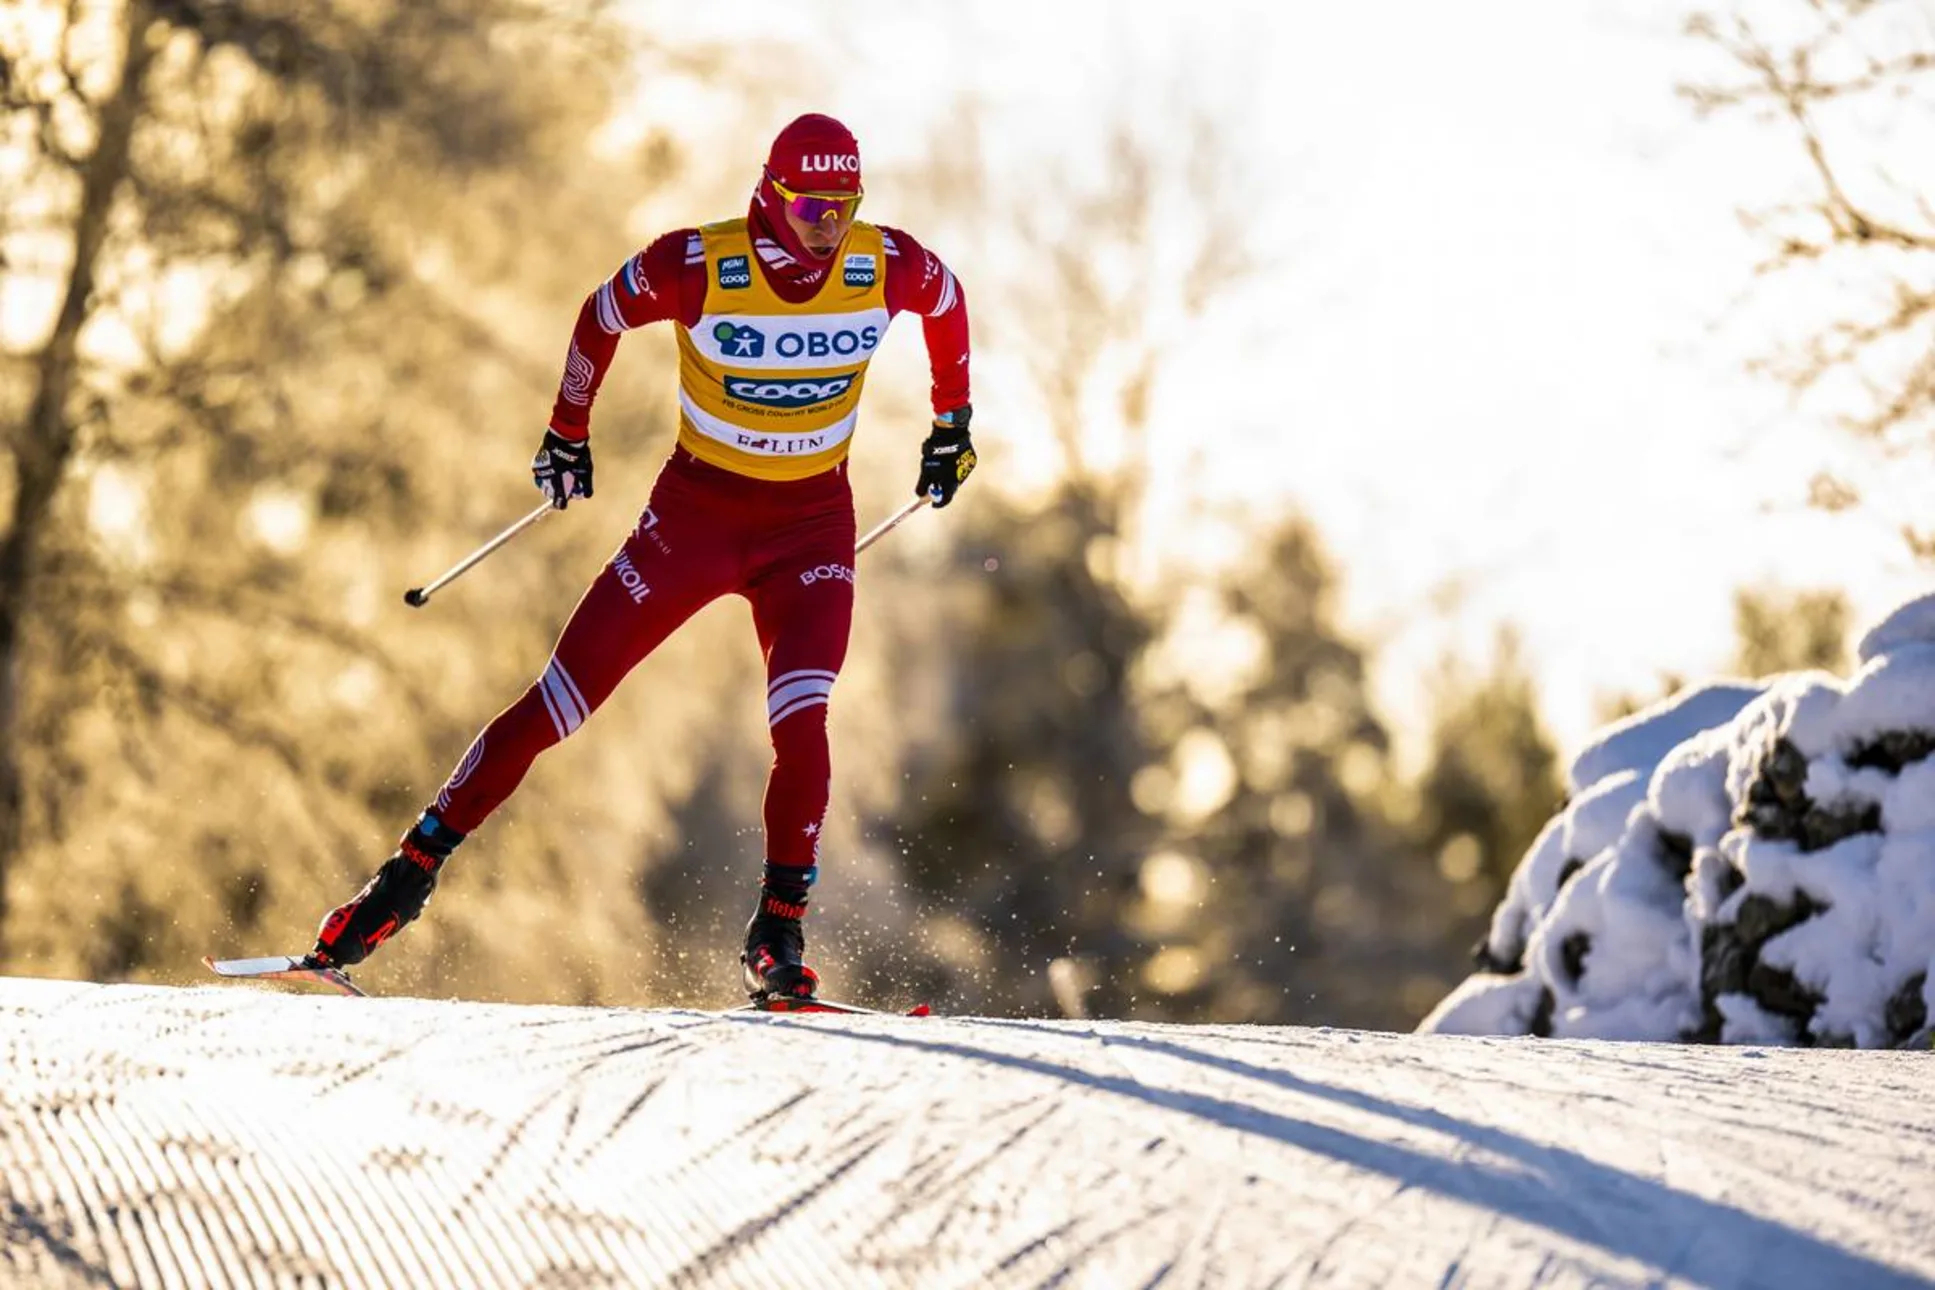 Лучшему лыжнику России Большунову не на чем бегать, спонсор отказался предоставлять ему лыжи